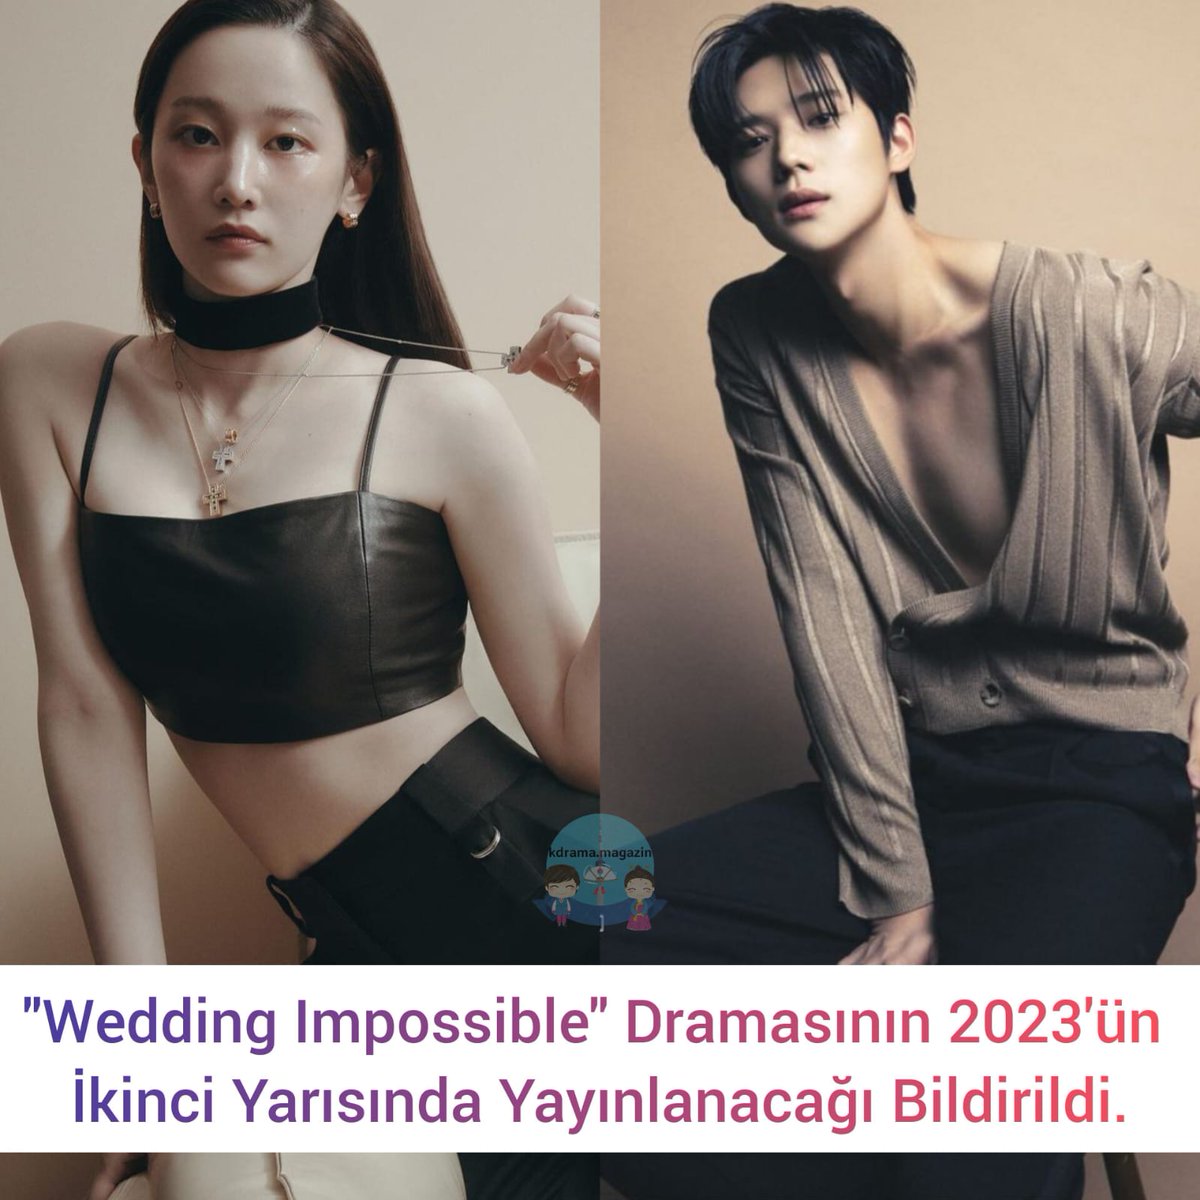 #WeddingImpossible Dramasının 2023'ün İkinci Yarısında Yayınlanacağı Bildirildi.

🍿Sahte bir evliliğe hazırlanan aktris hakkında.

➡️Pazartesi/salı günlerinde yayınlanması planlanıyor.

#JeonJongSeo #MoonSangMin